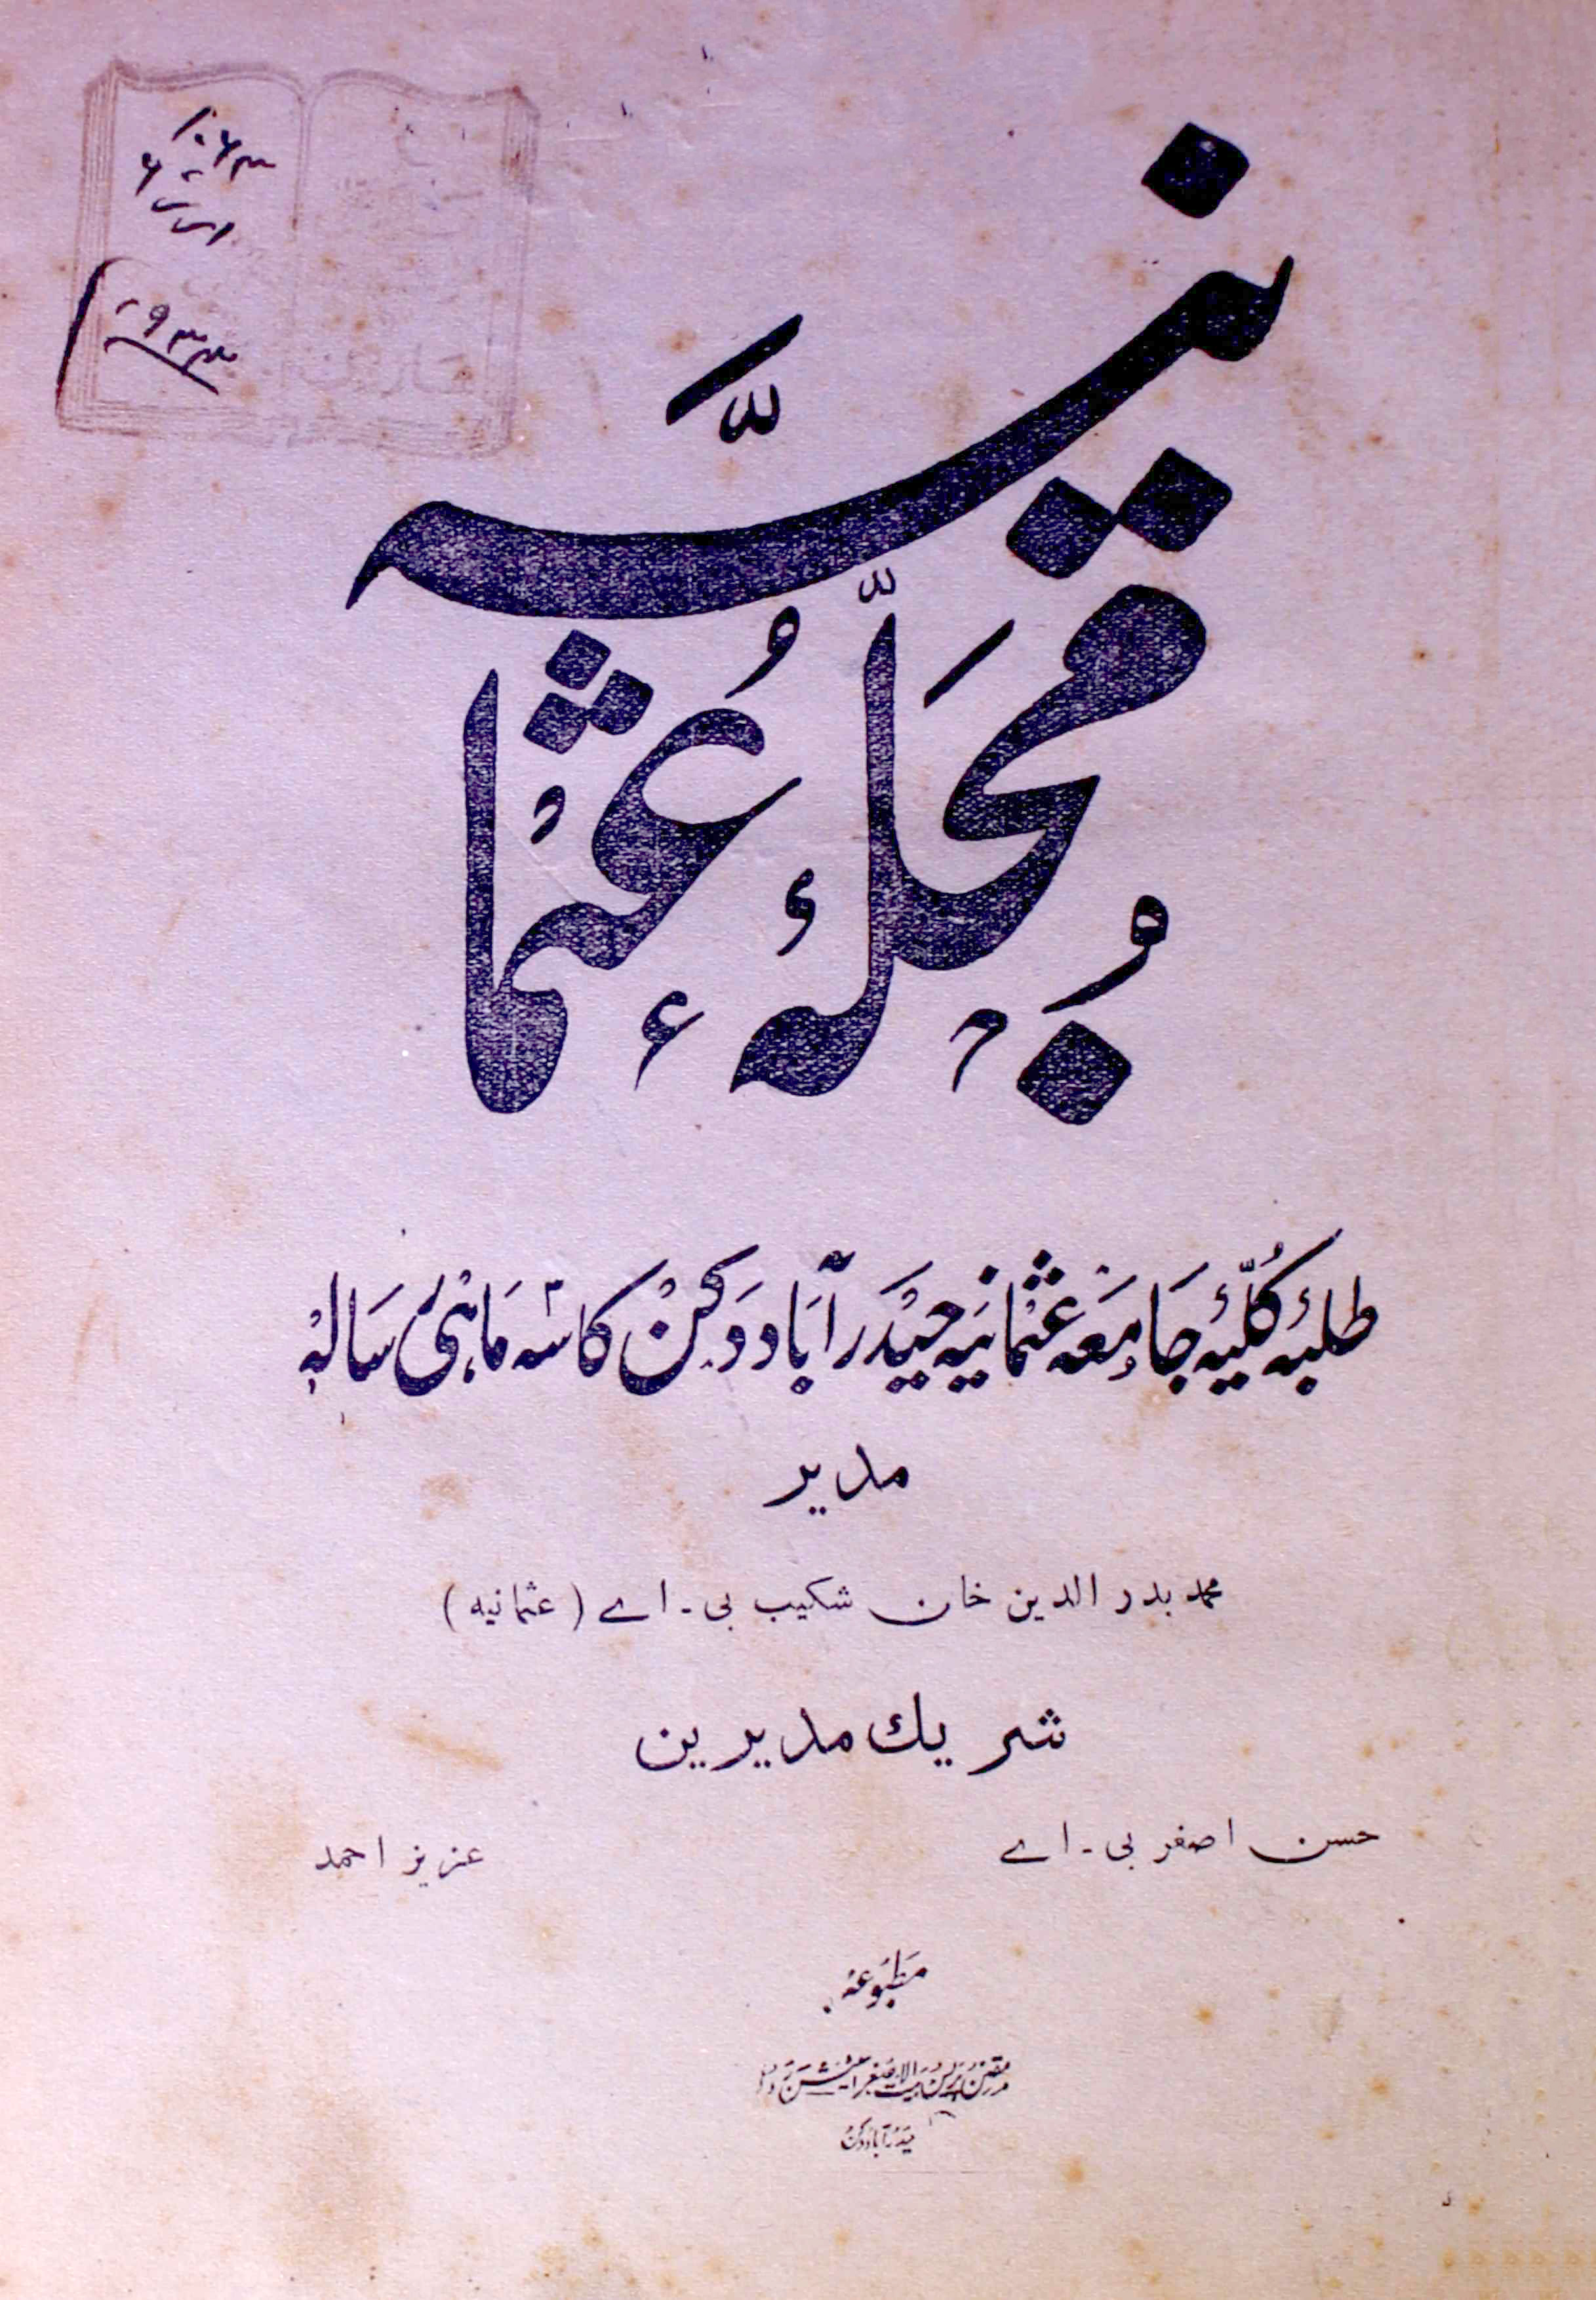 Mujalla-e-Osmania Jild-6 Shumara.1 - Hyd